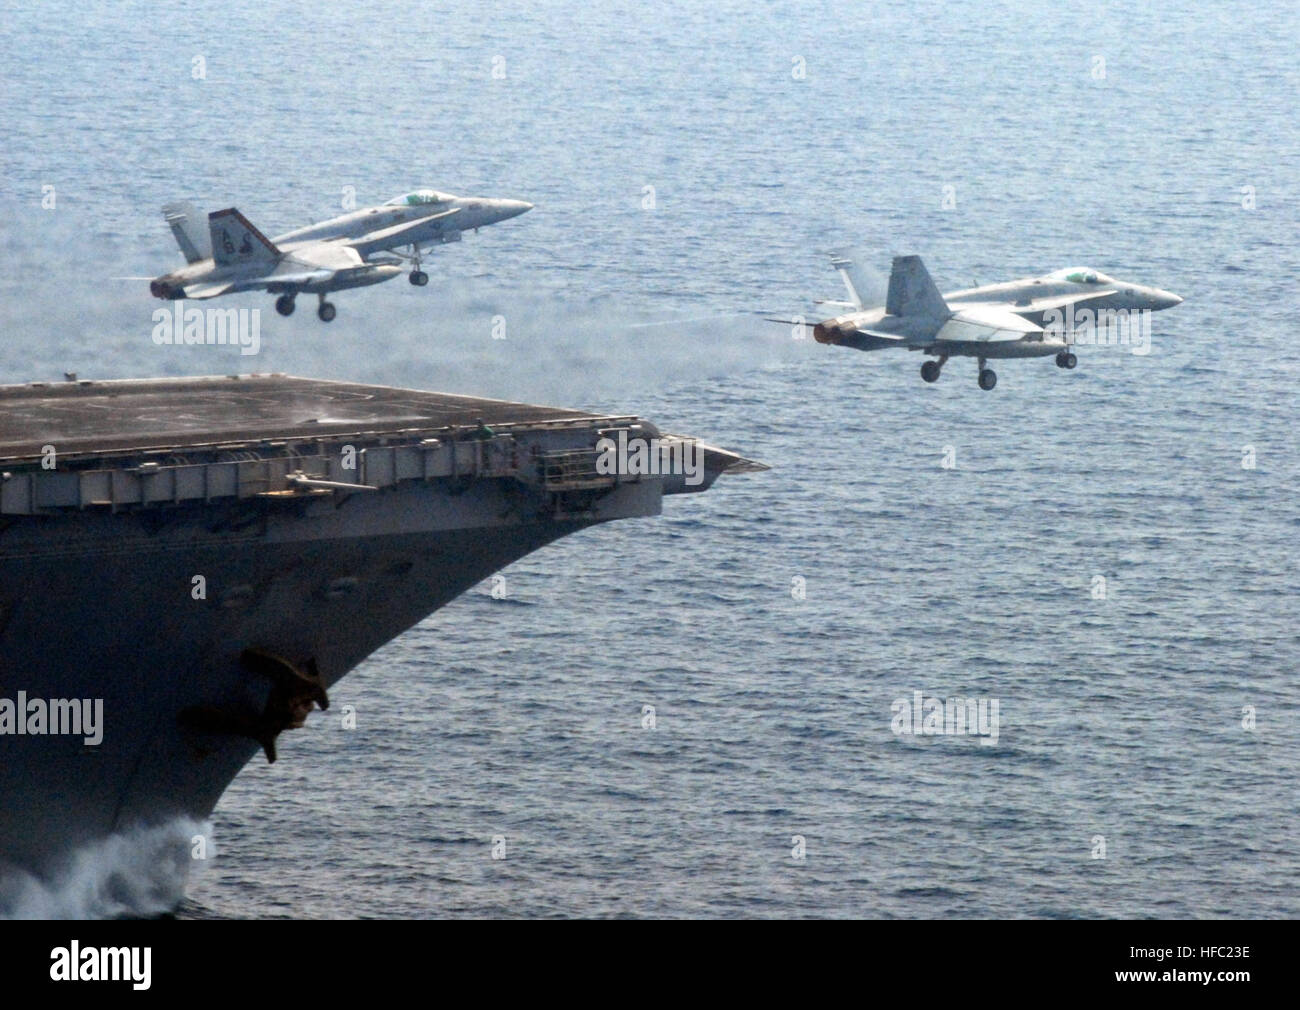 070910-N-9825N-002 Golfo Persico (sett. 10, 2007) - F/A-18Cs decollare da USS Enterprise (CVN 65) su una missione a sostegno della guerra globale su terrorsim. Stati Uniti Foto di Marina (rilasciato) 2 aeromobili cat shot Foto Stock